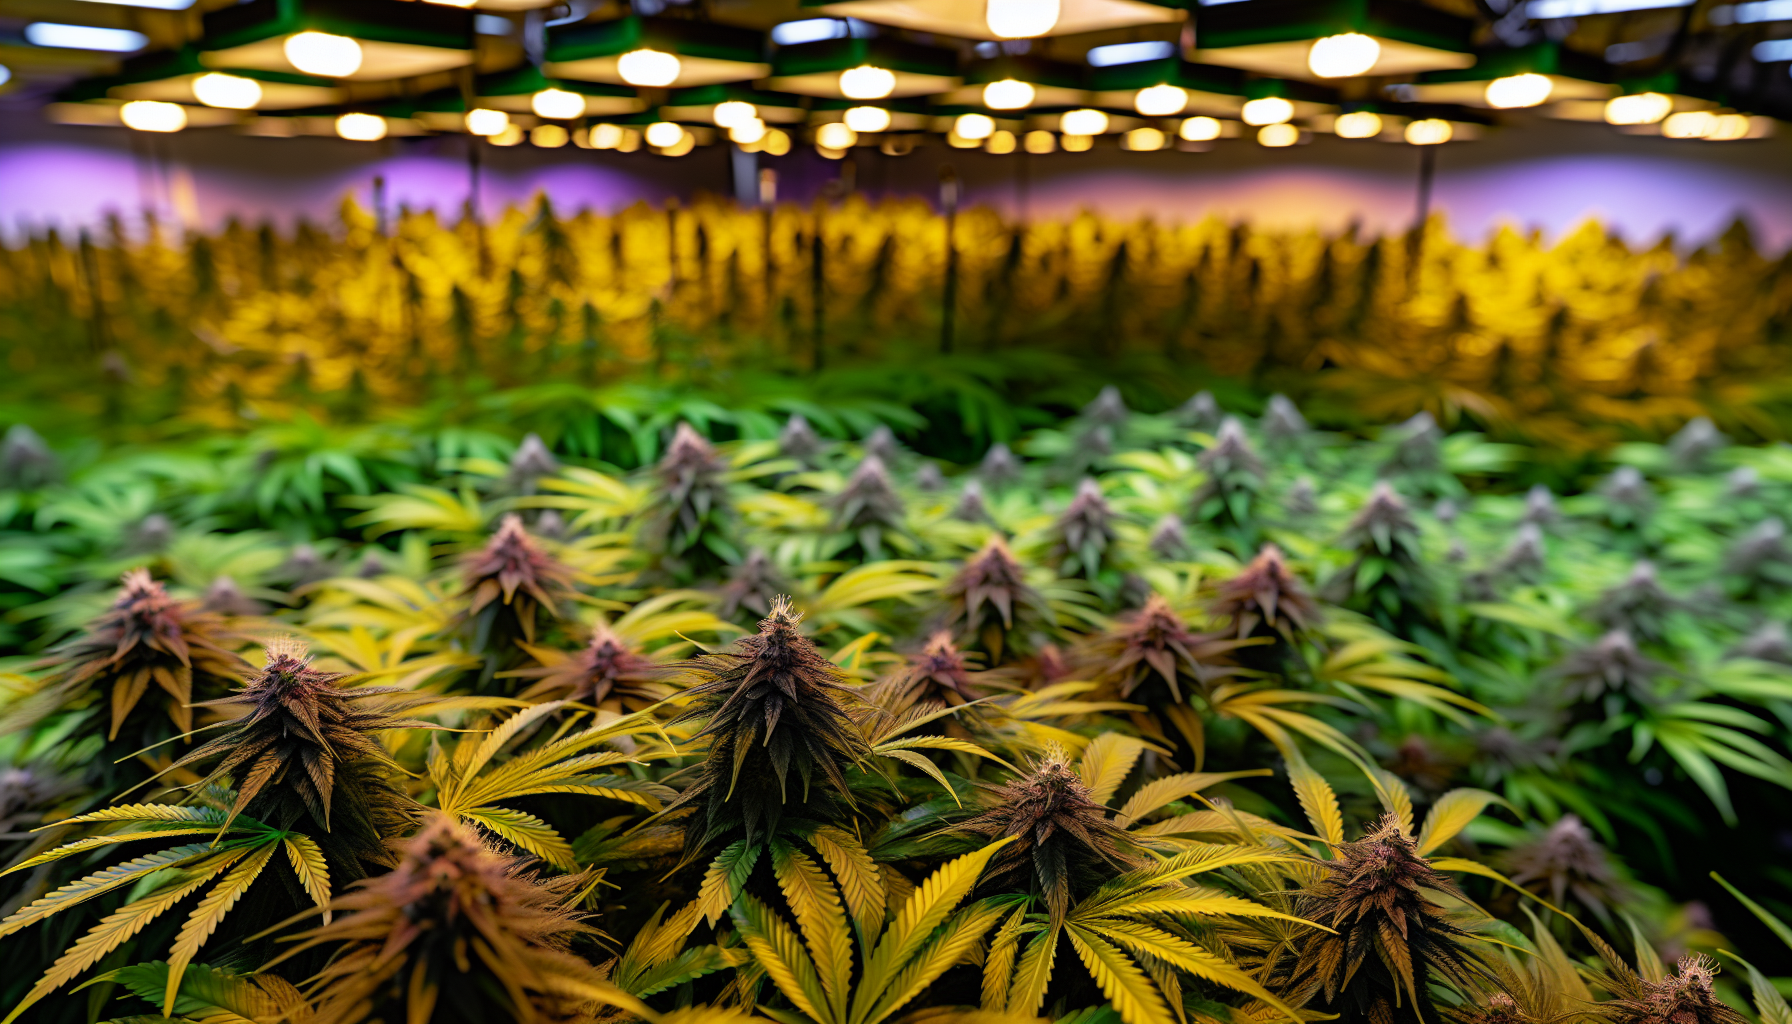 Cannabisblüten kurz vor dem Erntezeitpunkt